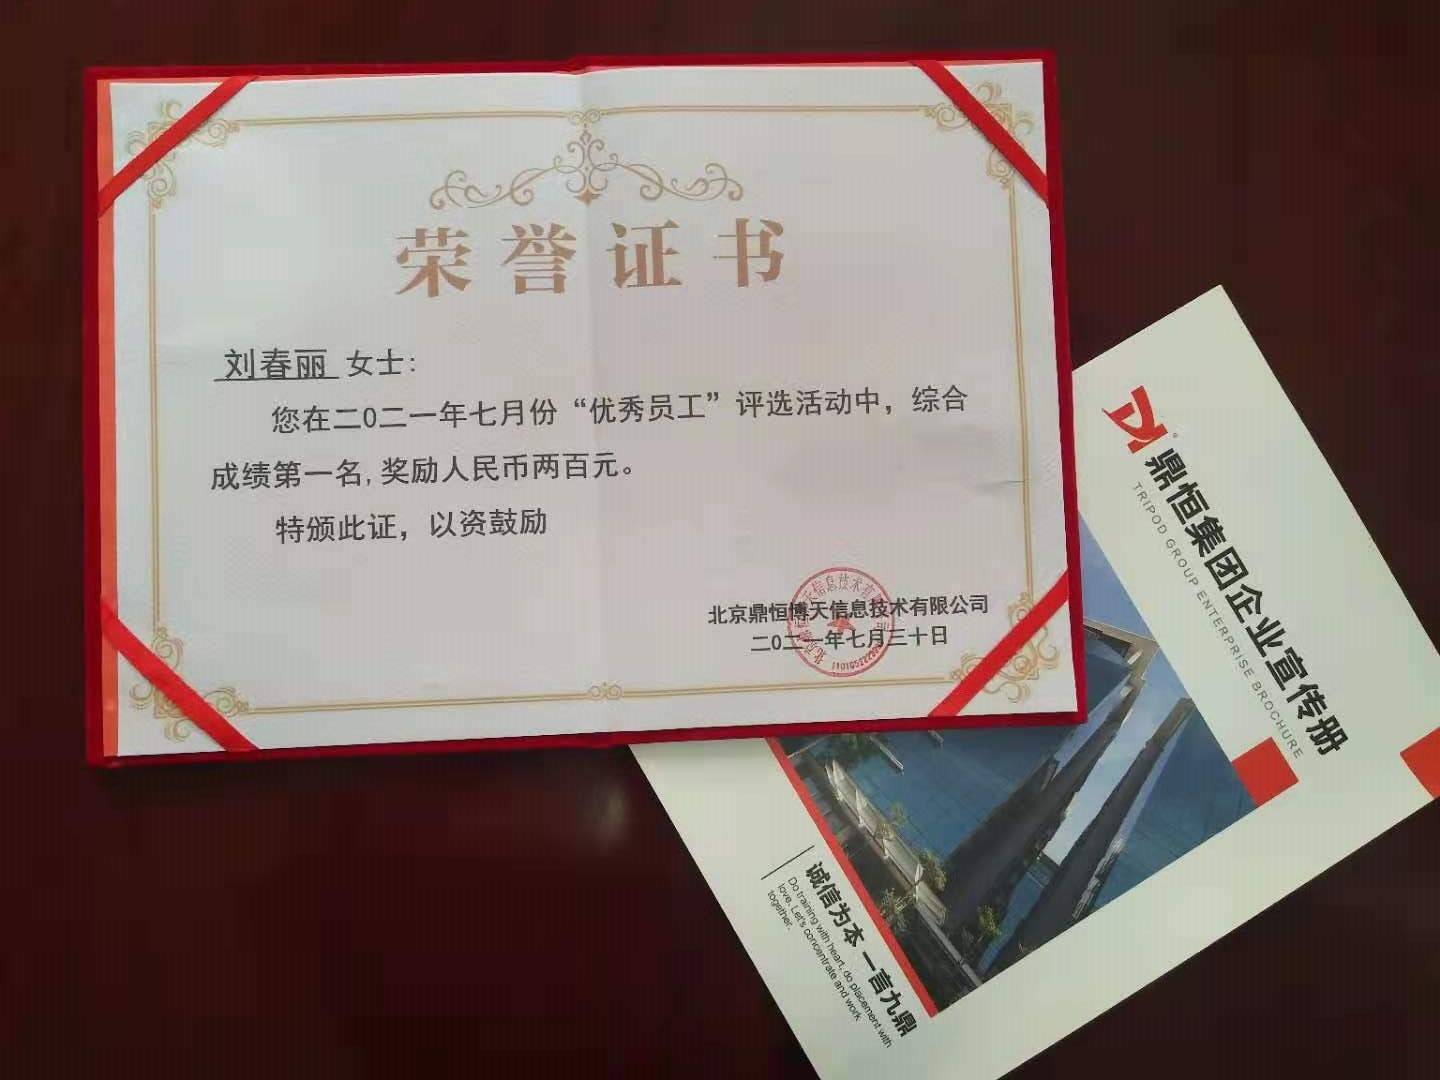 呼和浩特分公司刘春丽女士荣获七月综合成绩第一名优秀员工称号